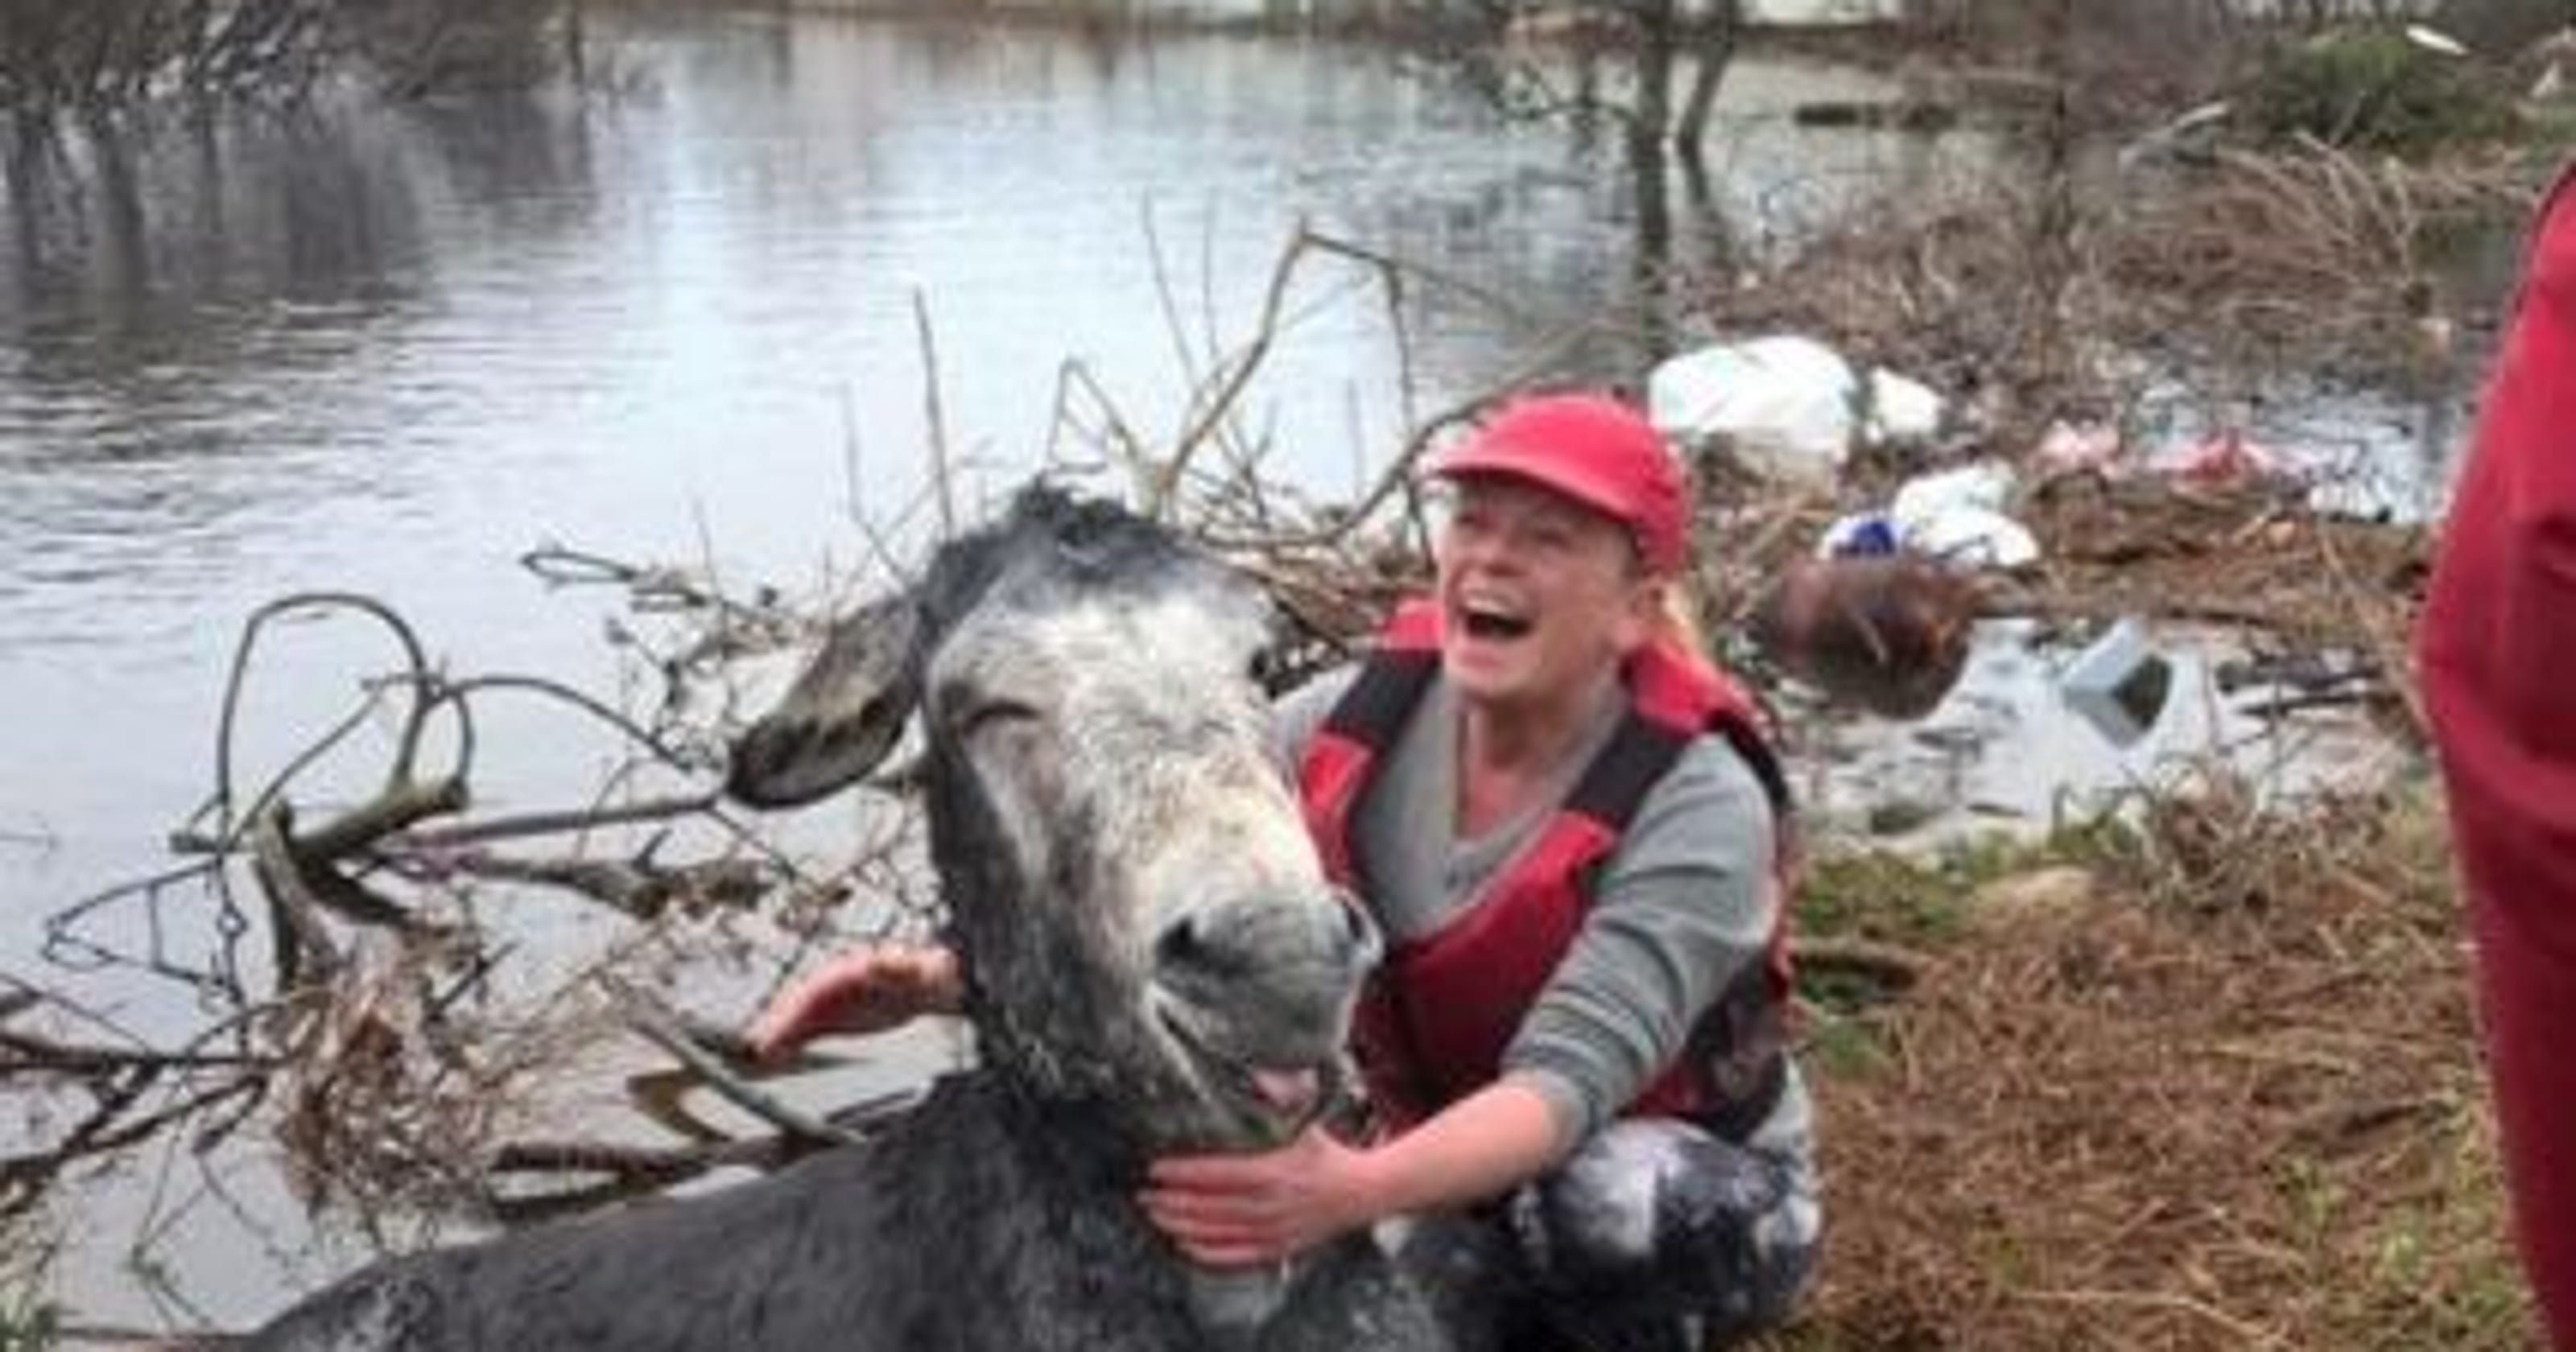 Diselamatkan dari Banjir, Keledai Beri Ungkapan Terima Kasih yang Tulus dengan Cara Ini